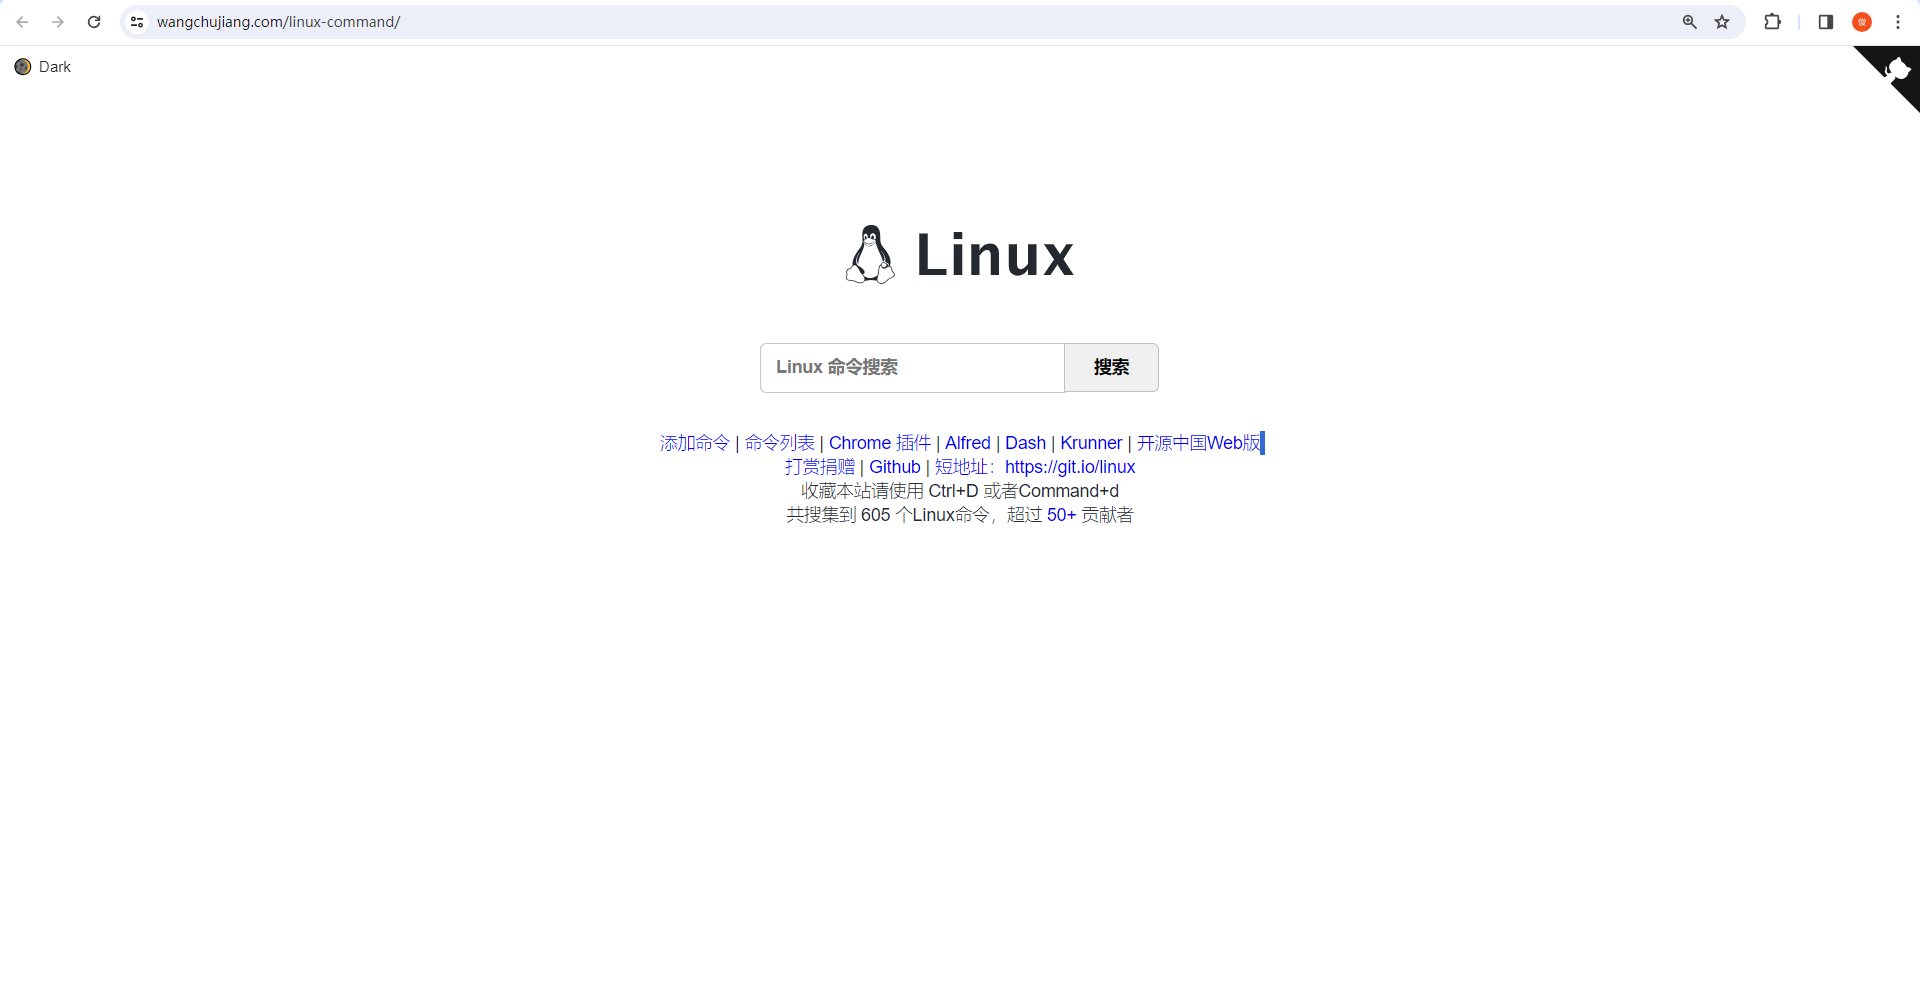 使用 Docker 部署 Linux-Command 命令搜索工具